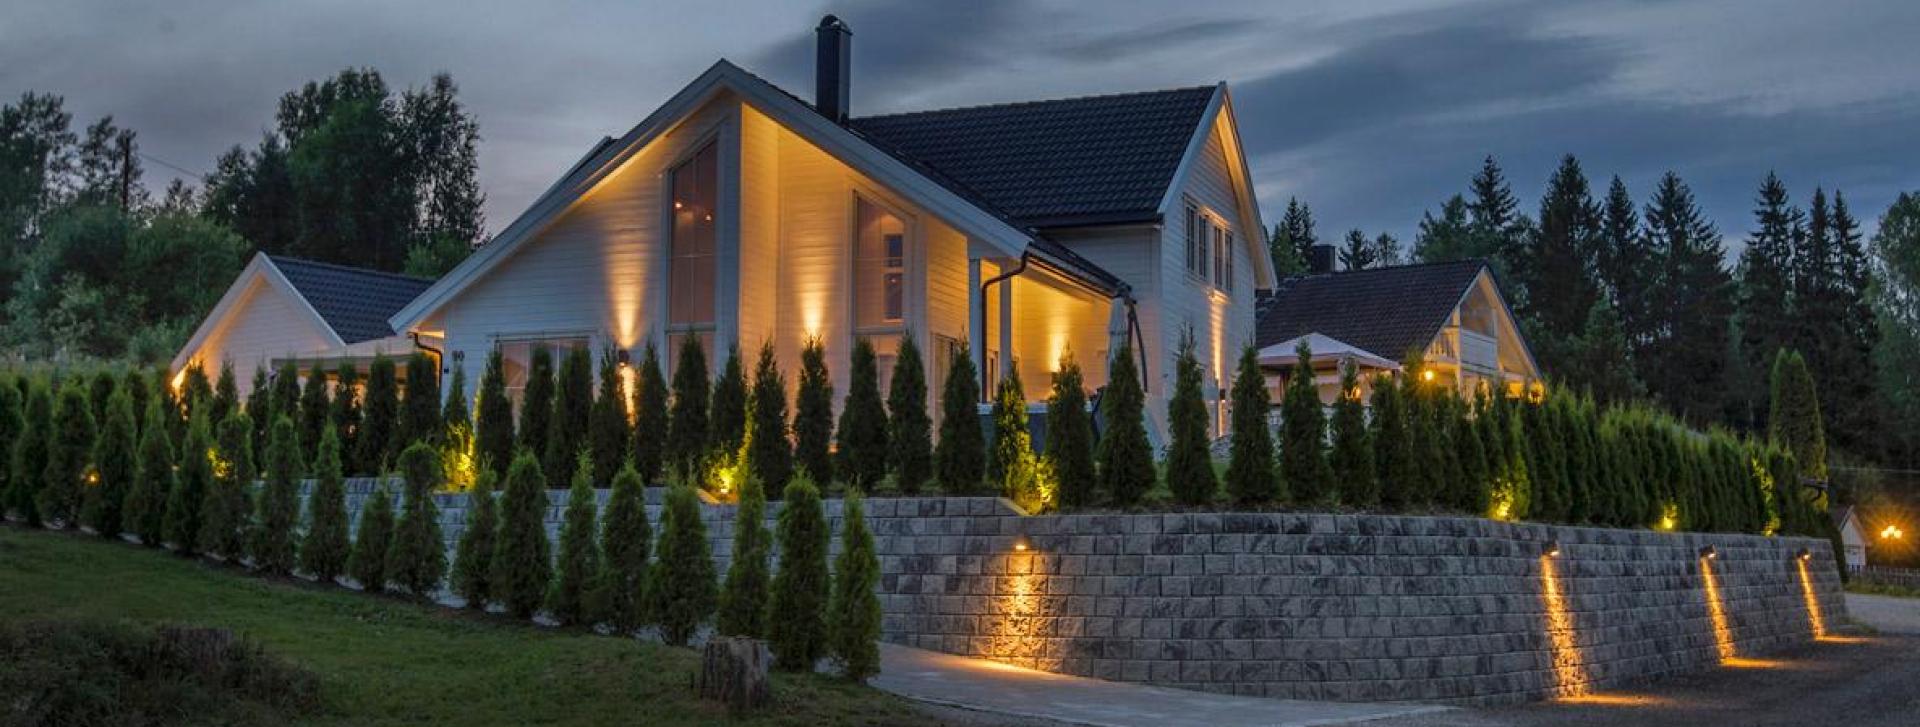 Hus med flott hage og utebelysning bygd av Nordbohus